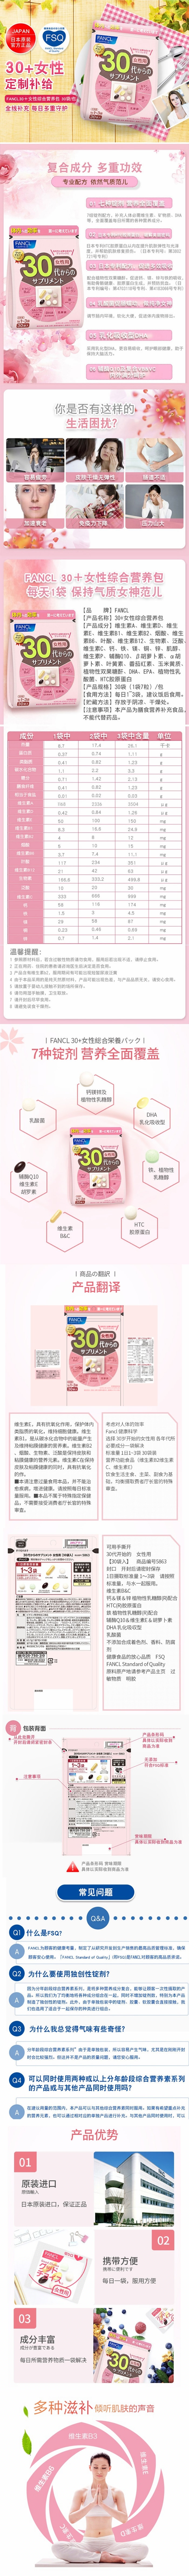 【年中大促】【日本直郵】日本FANCL芳珂 30歲30代以上女性專用保健營養品 30袋